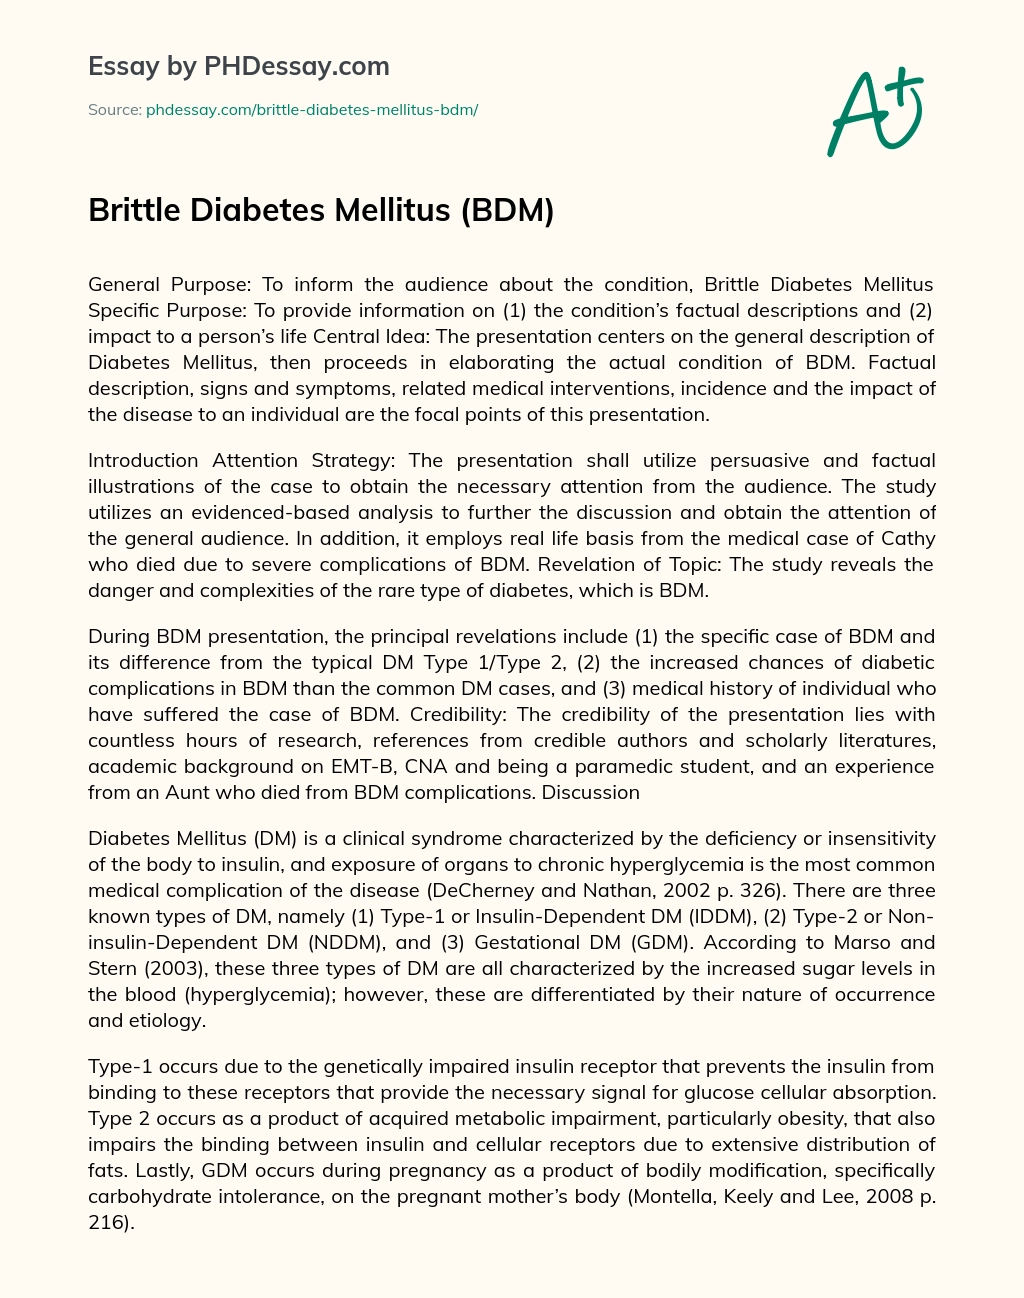 Brittle Diabetes Mellitus (BDM) essay